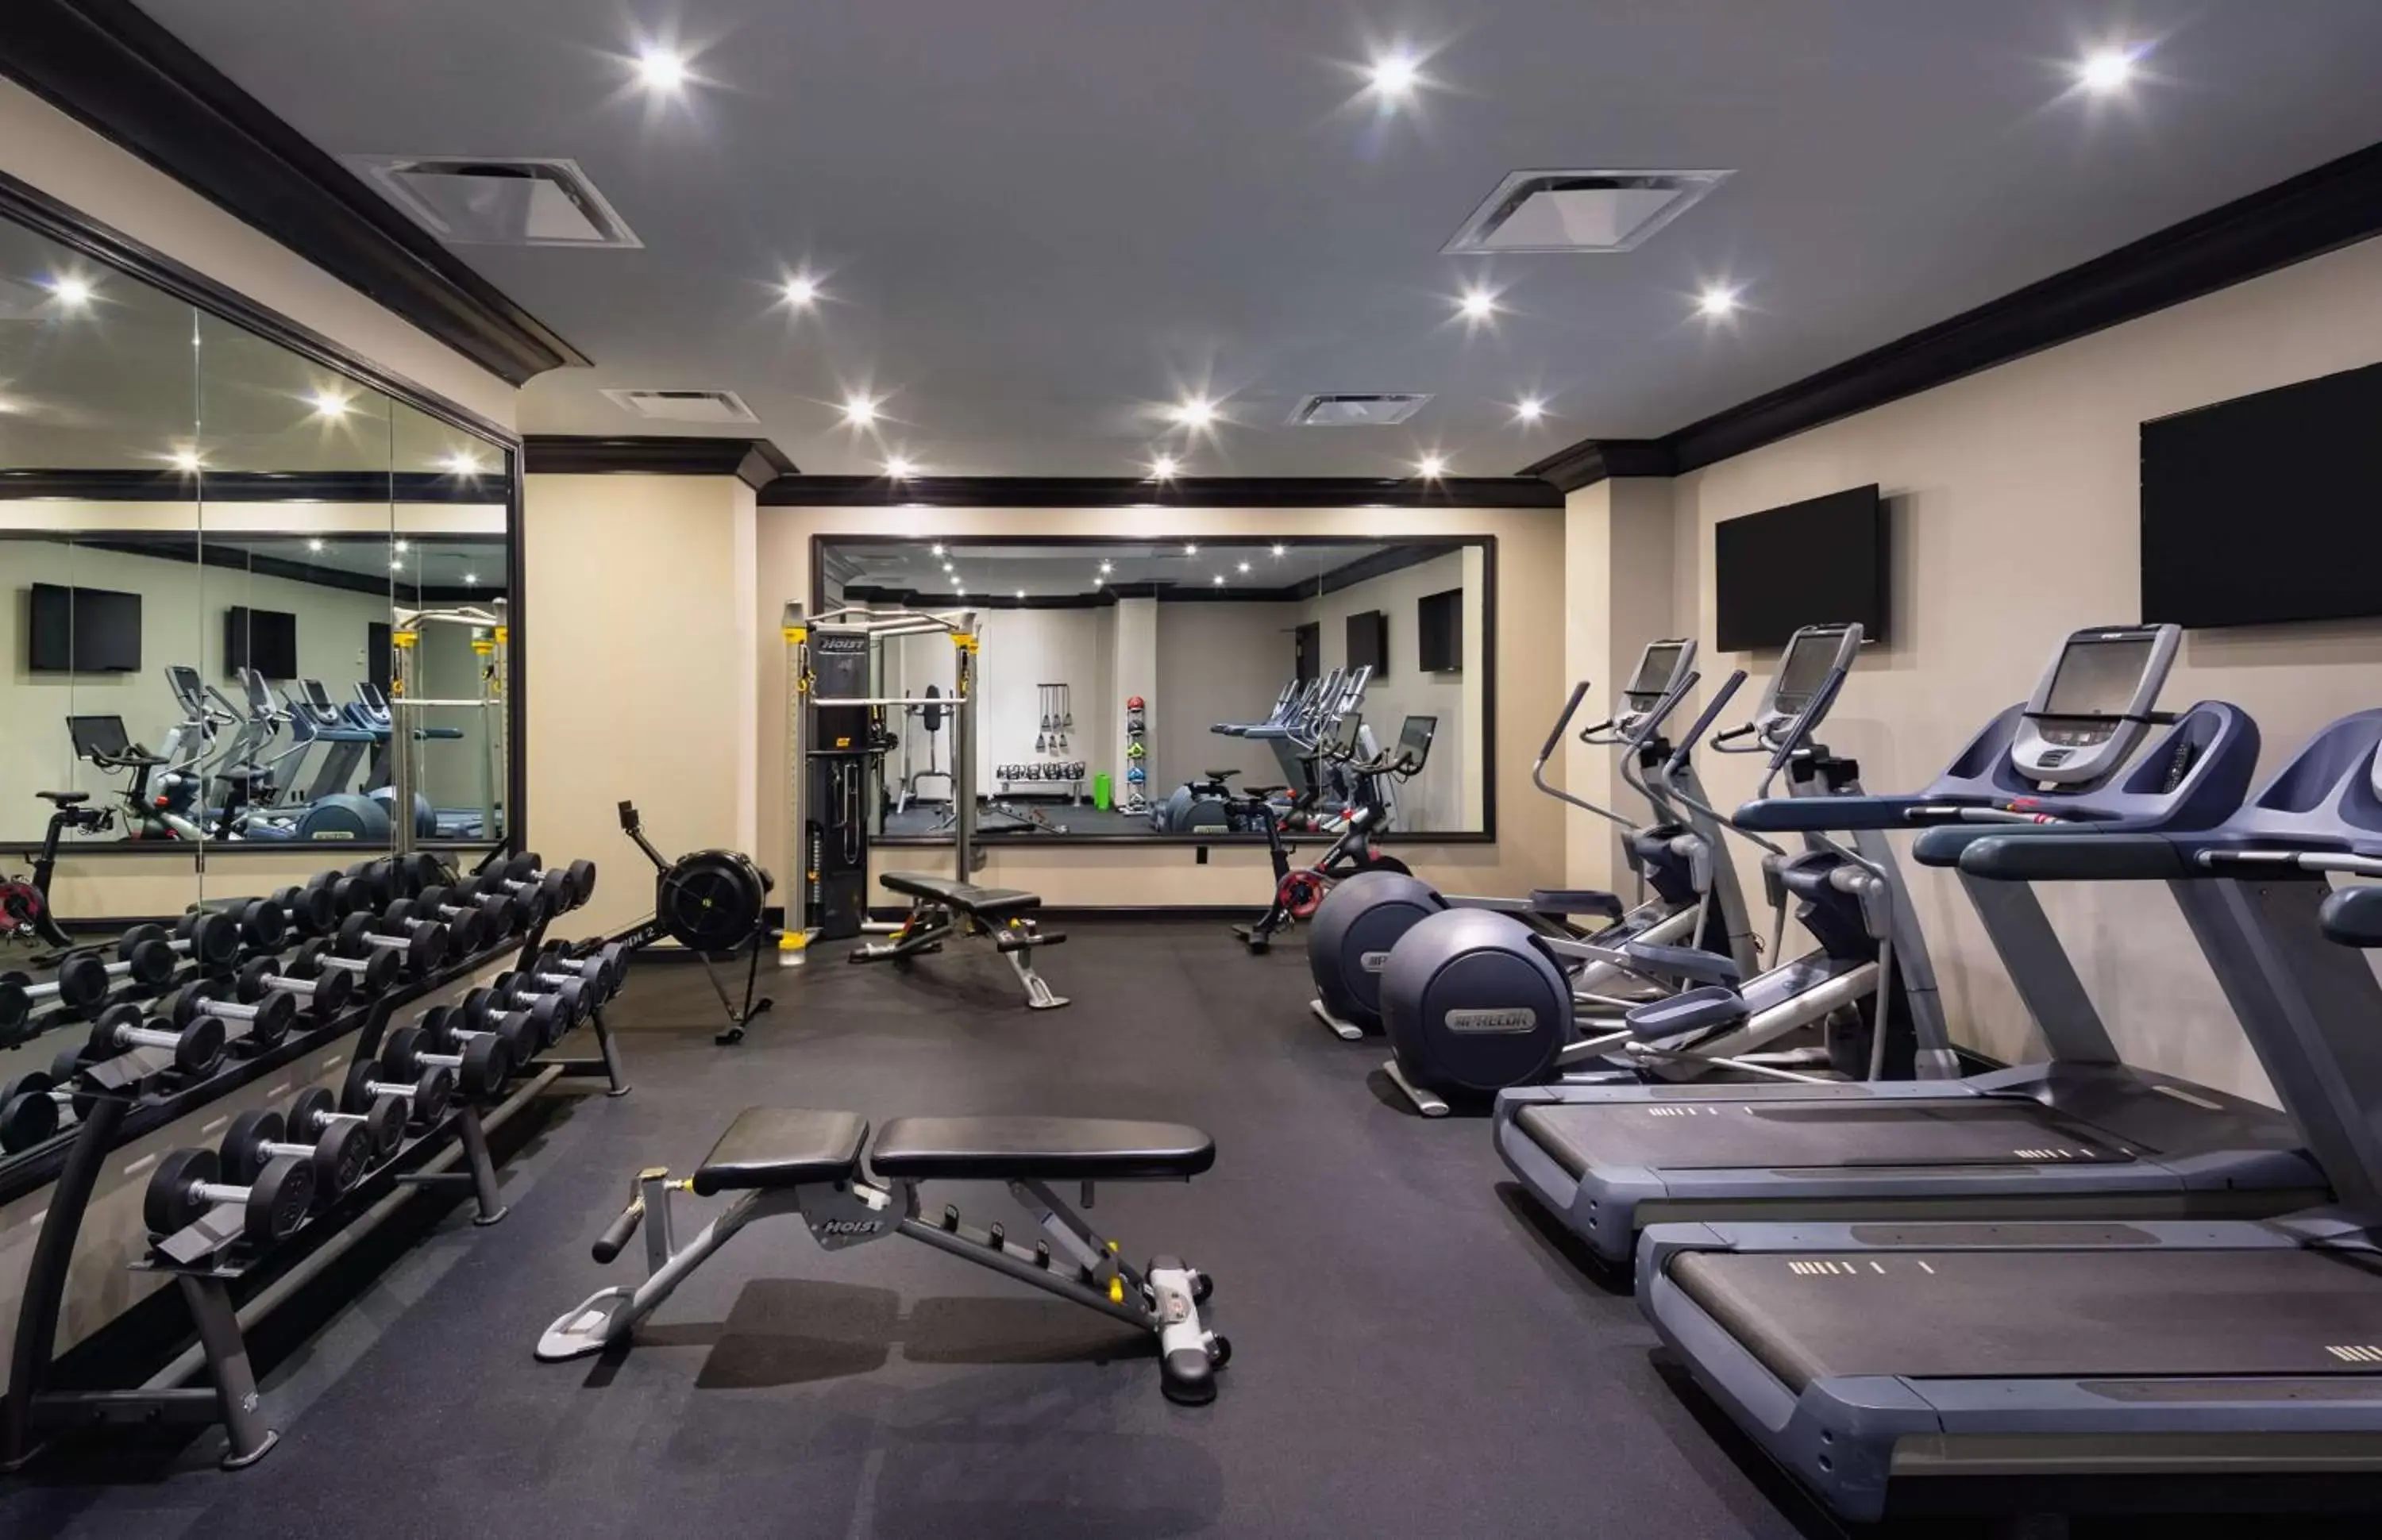 Fitness centre/facilities, Fitness Center/Facilities in Dream Nashville, Part Of Hyatt